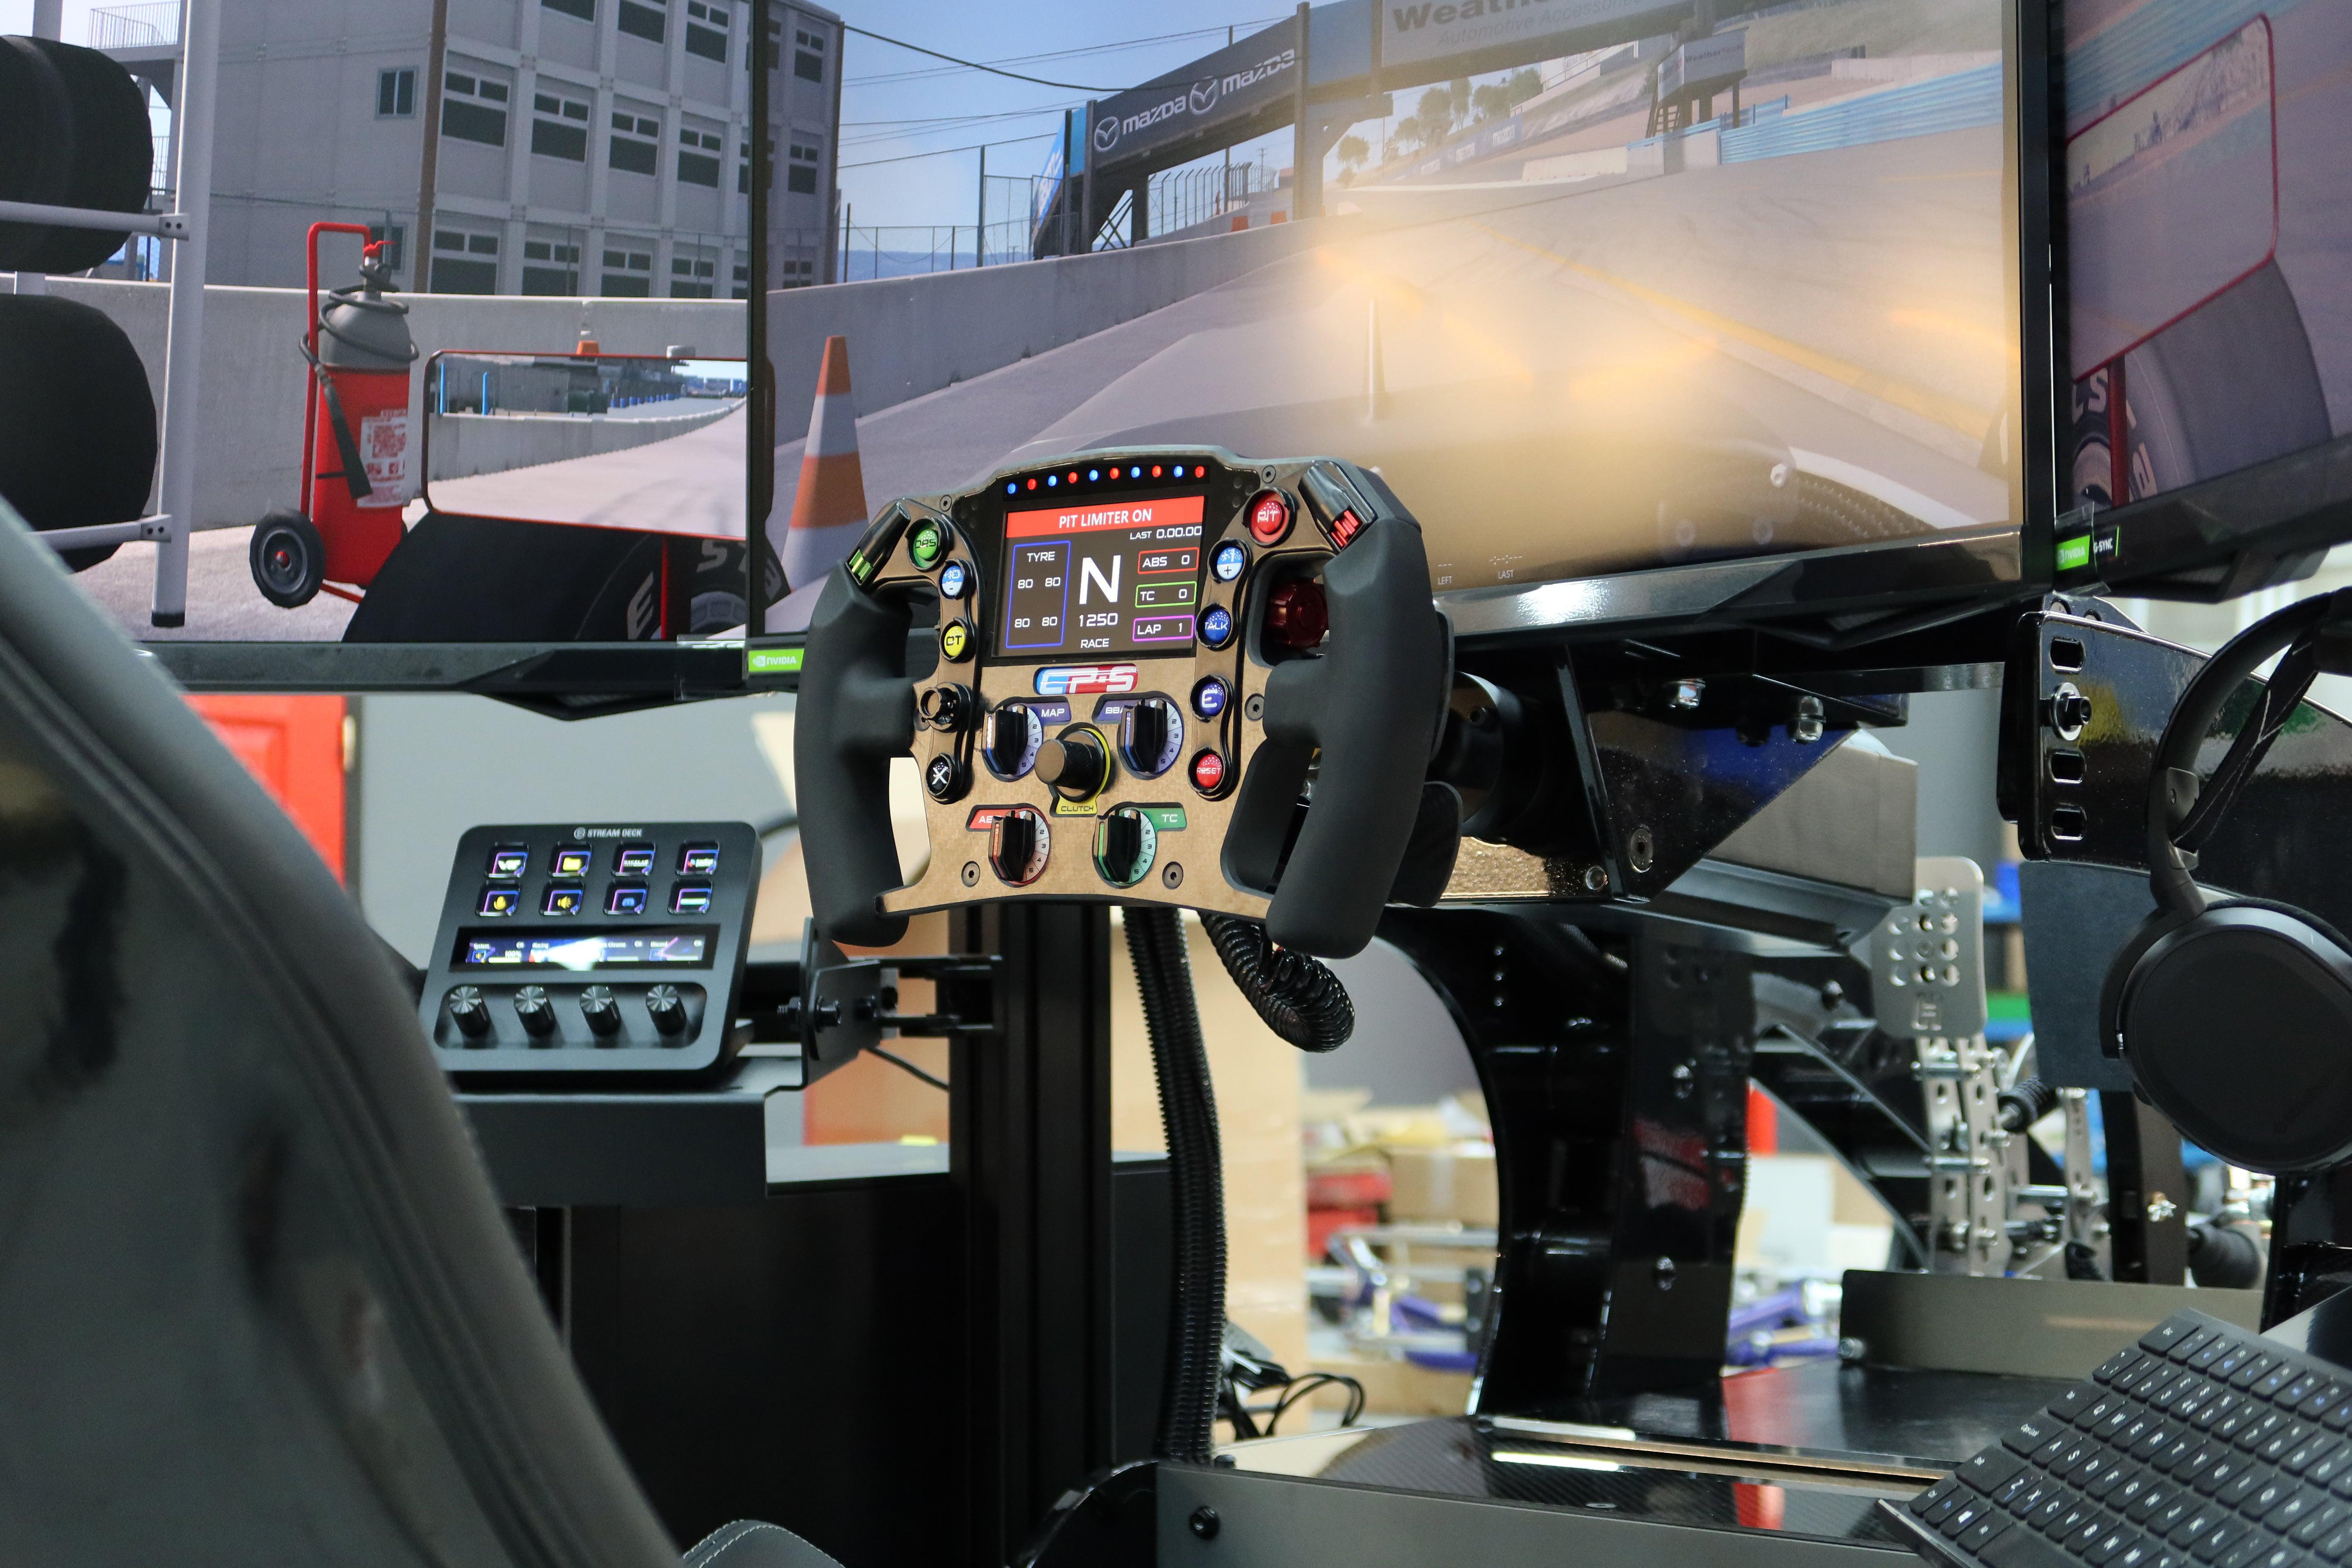 Gaming Simulator Ps4 Ps5 Driving Display Steering Wheel Chulovs